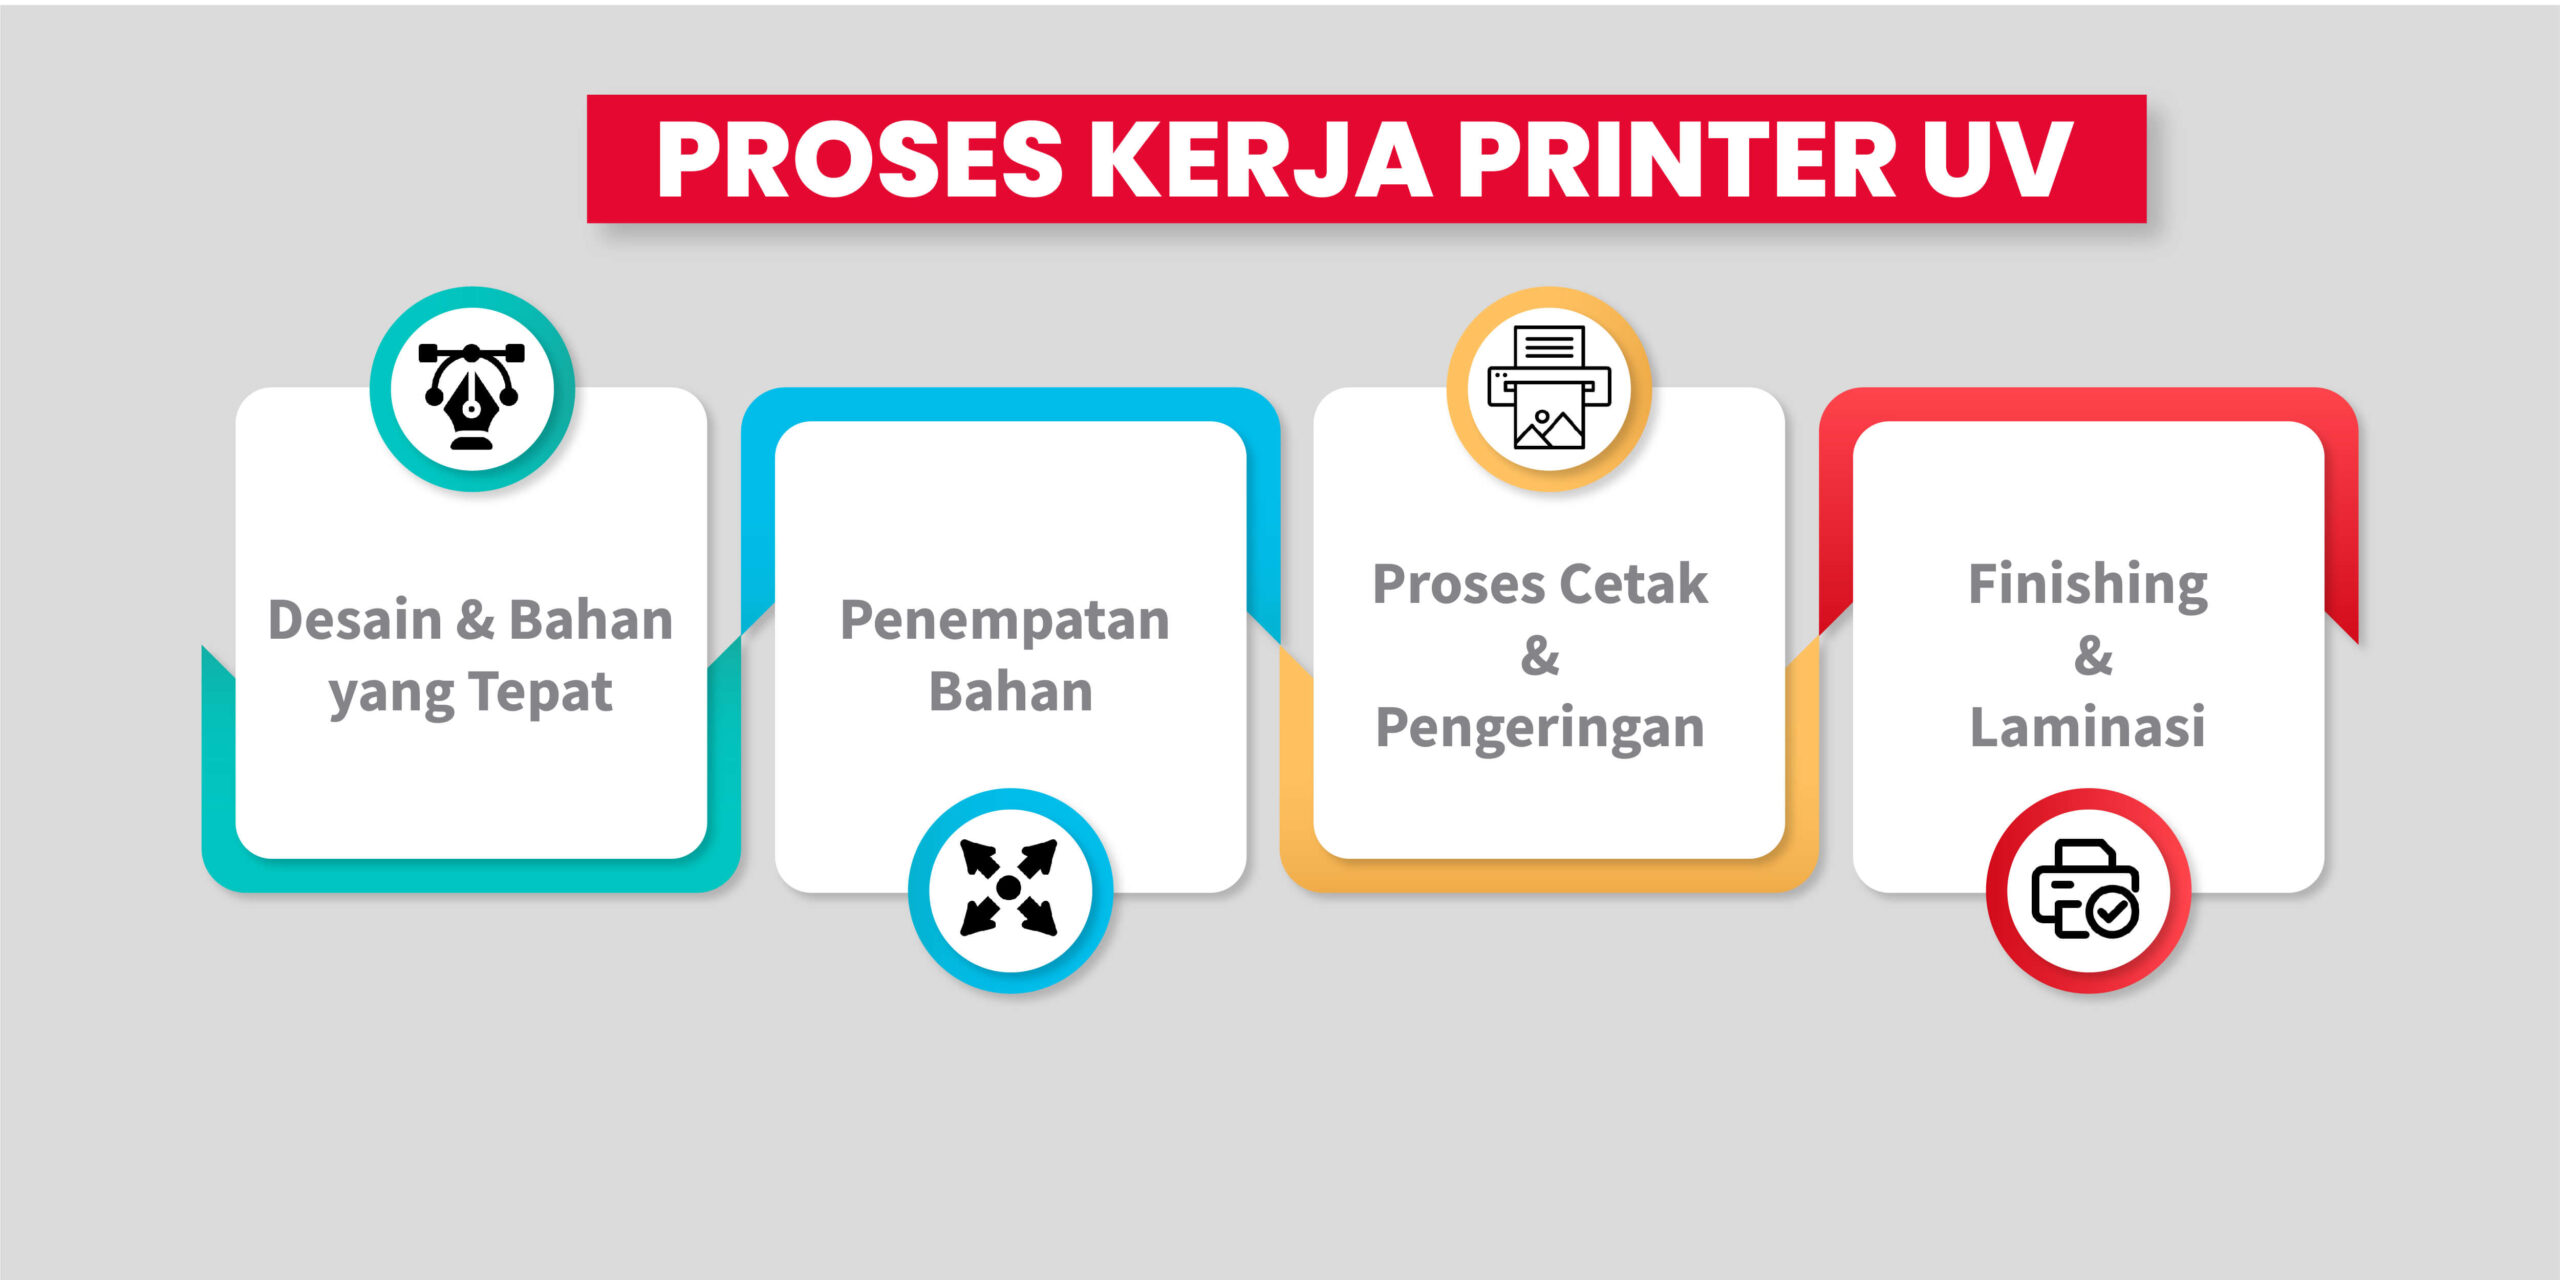 Proses Kerja Printer Uv